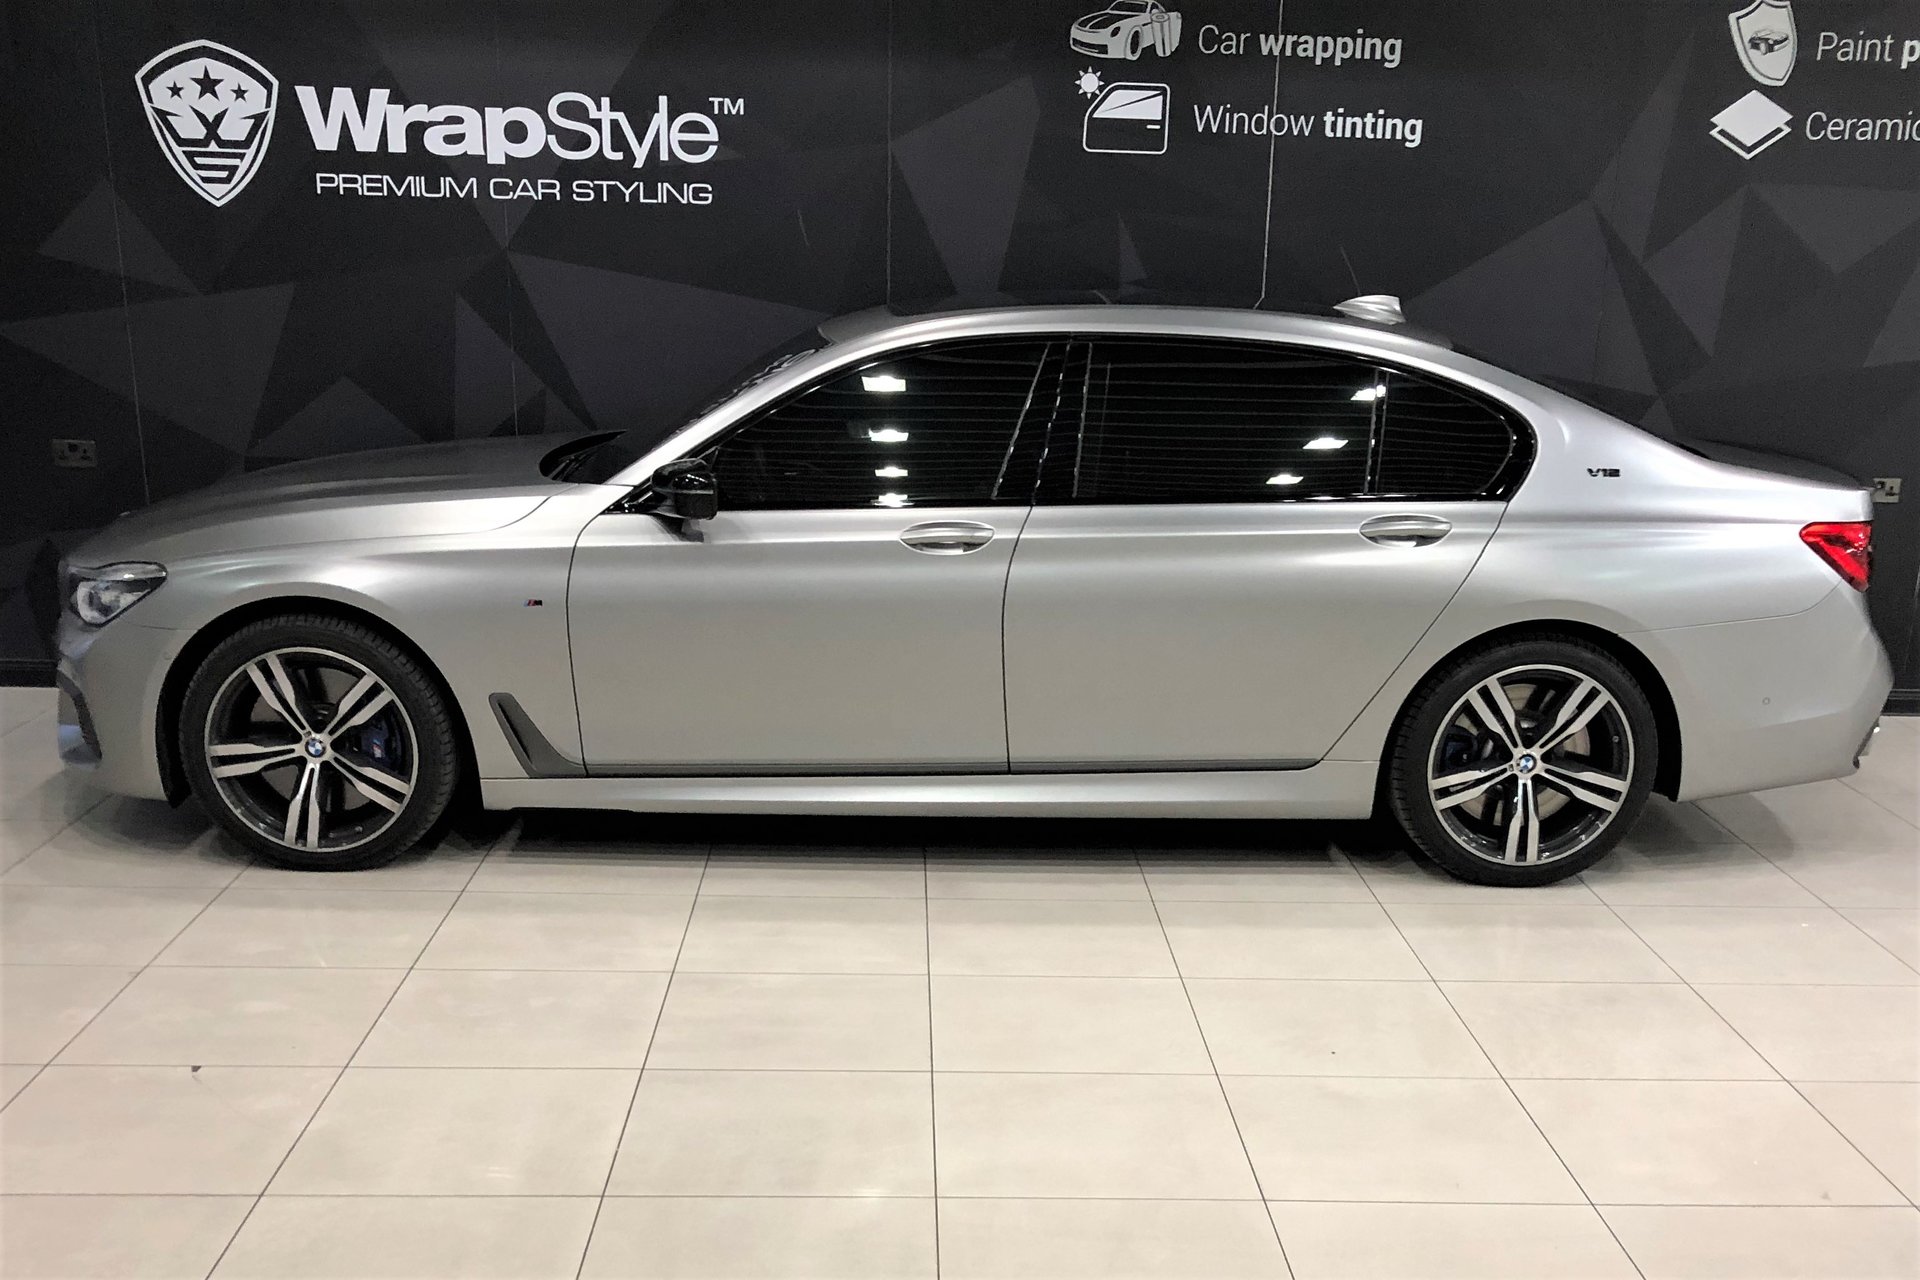 BMW 760Li - Silver Satin wrap